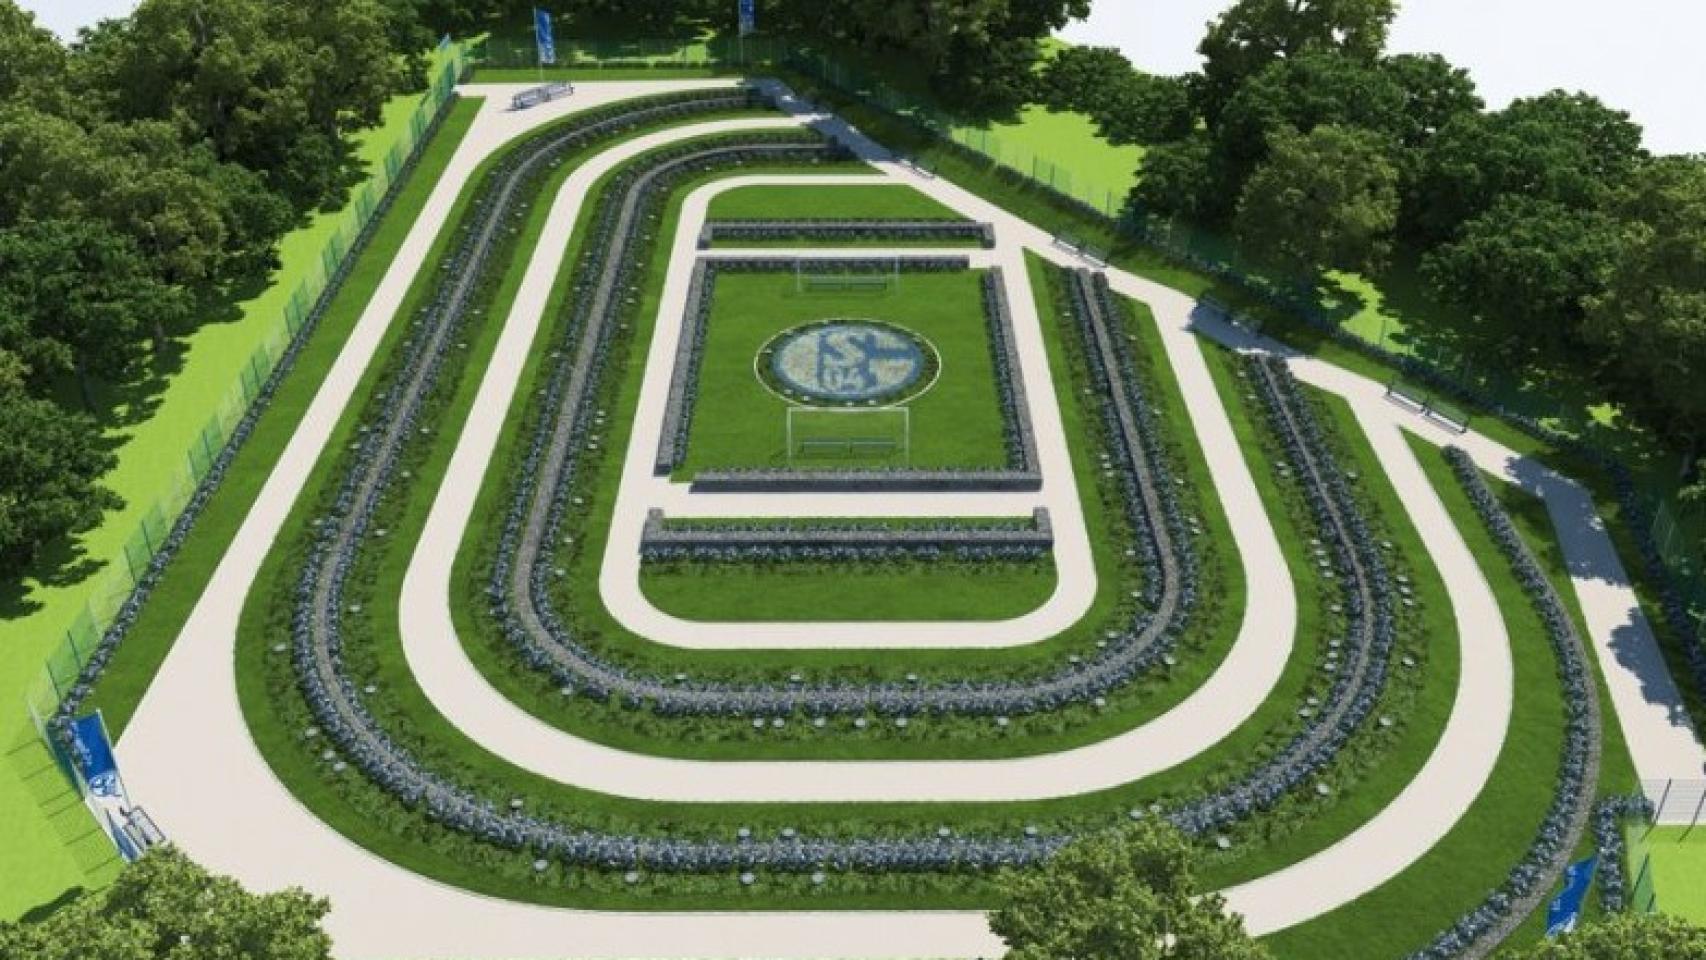 Imagen del cementerio del Schalke, con un pequeño campo de fútbol en el centro.